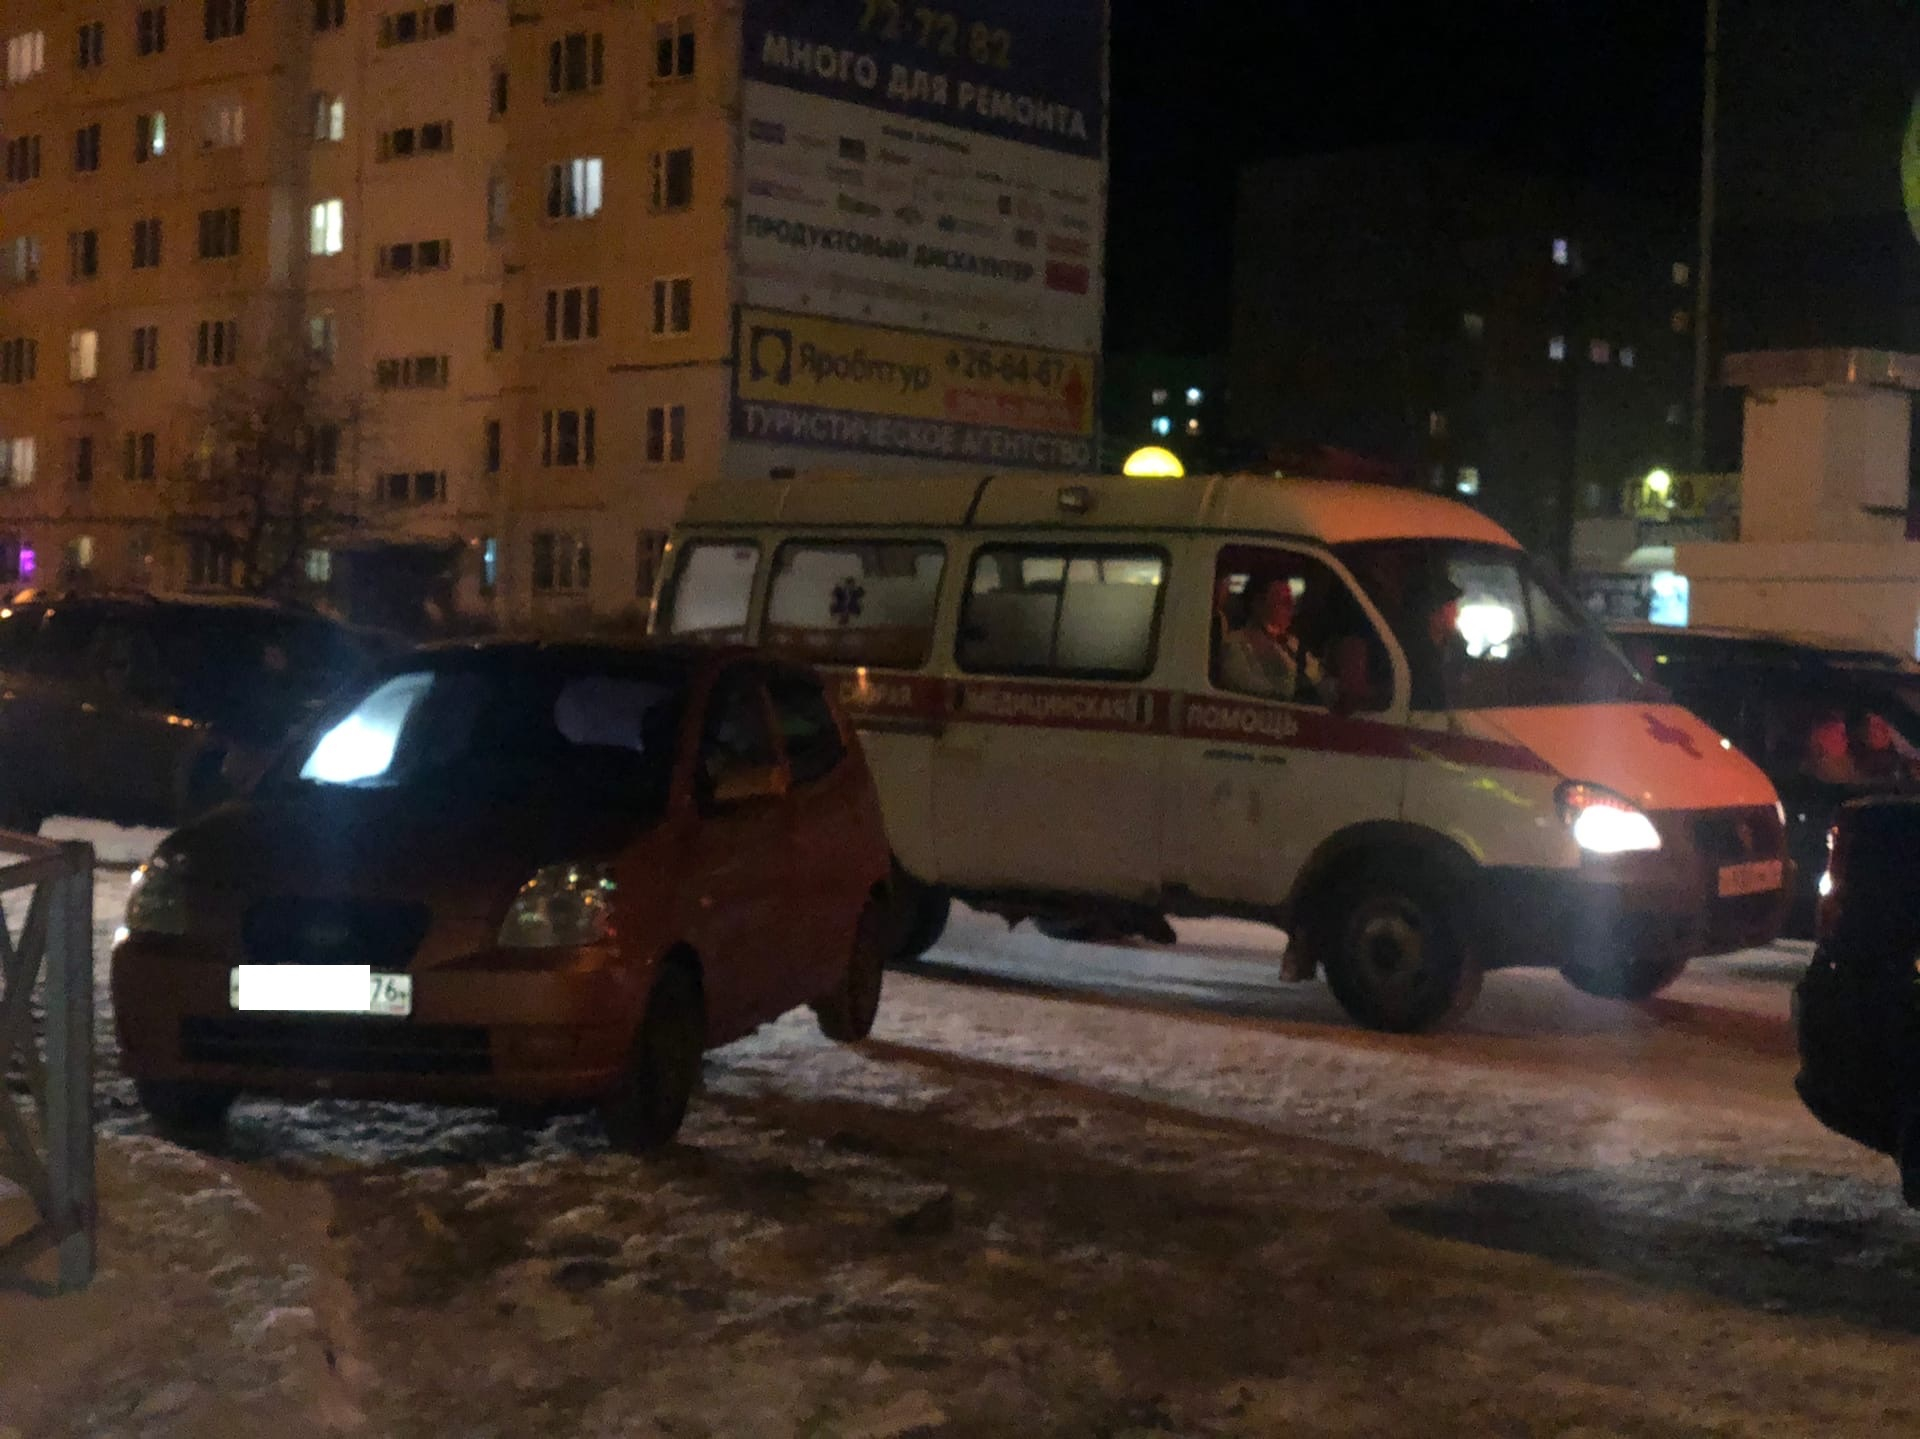 "Убирайся": ярославец забил до смерти друга, чтобы не идти домой